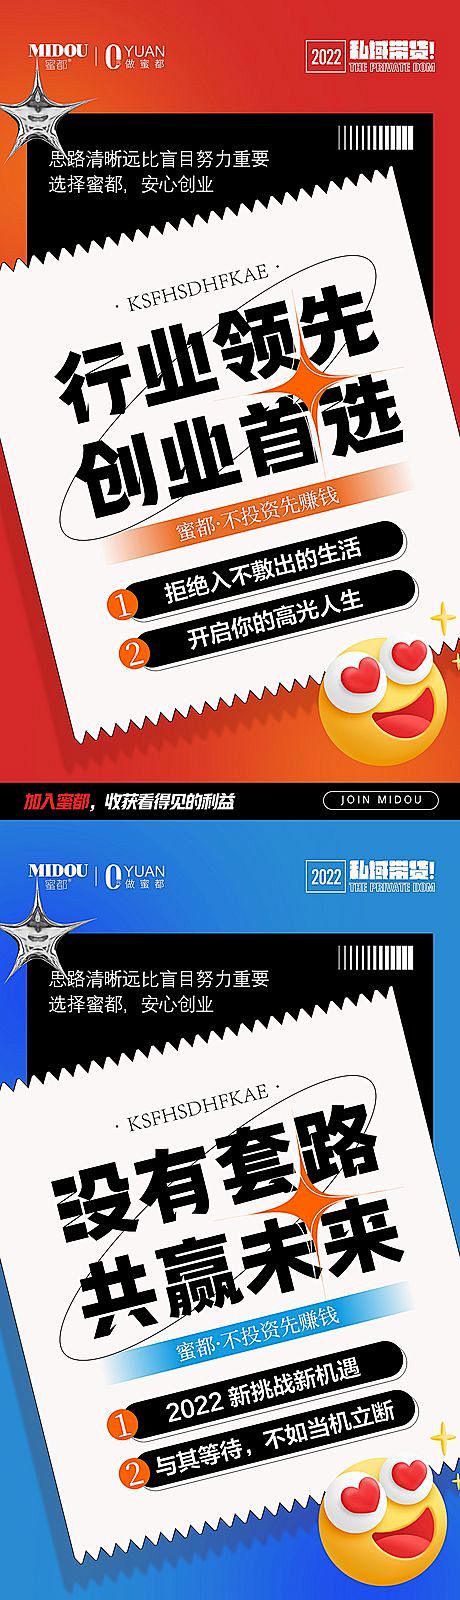 仙图-品牌微商招商造势朋友圈创意系列海报